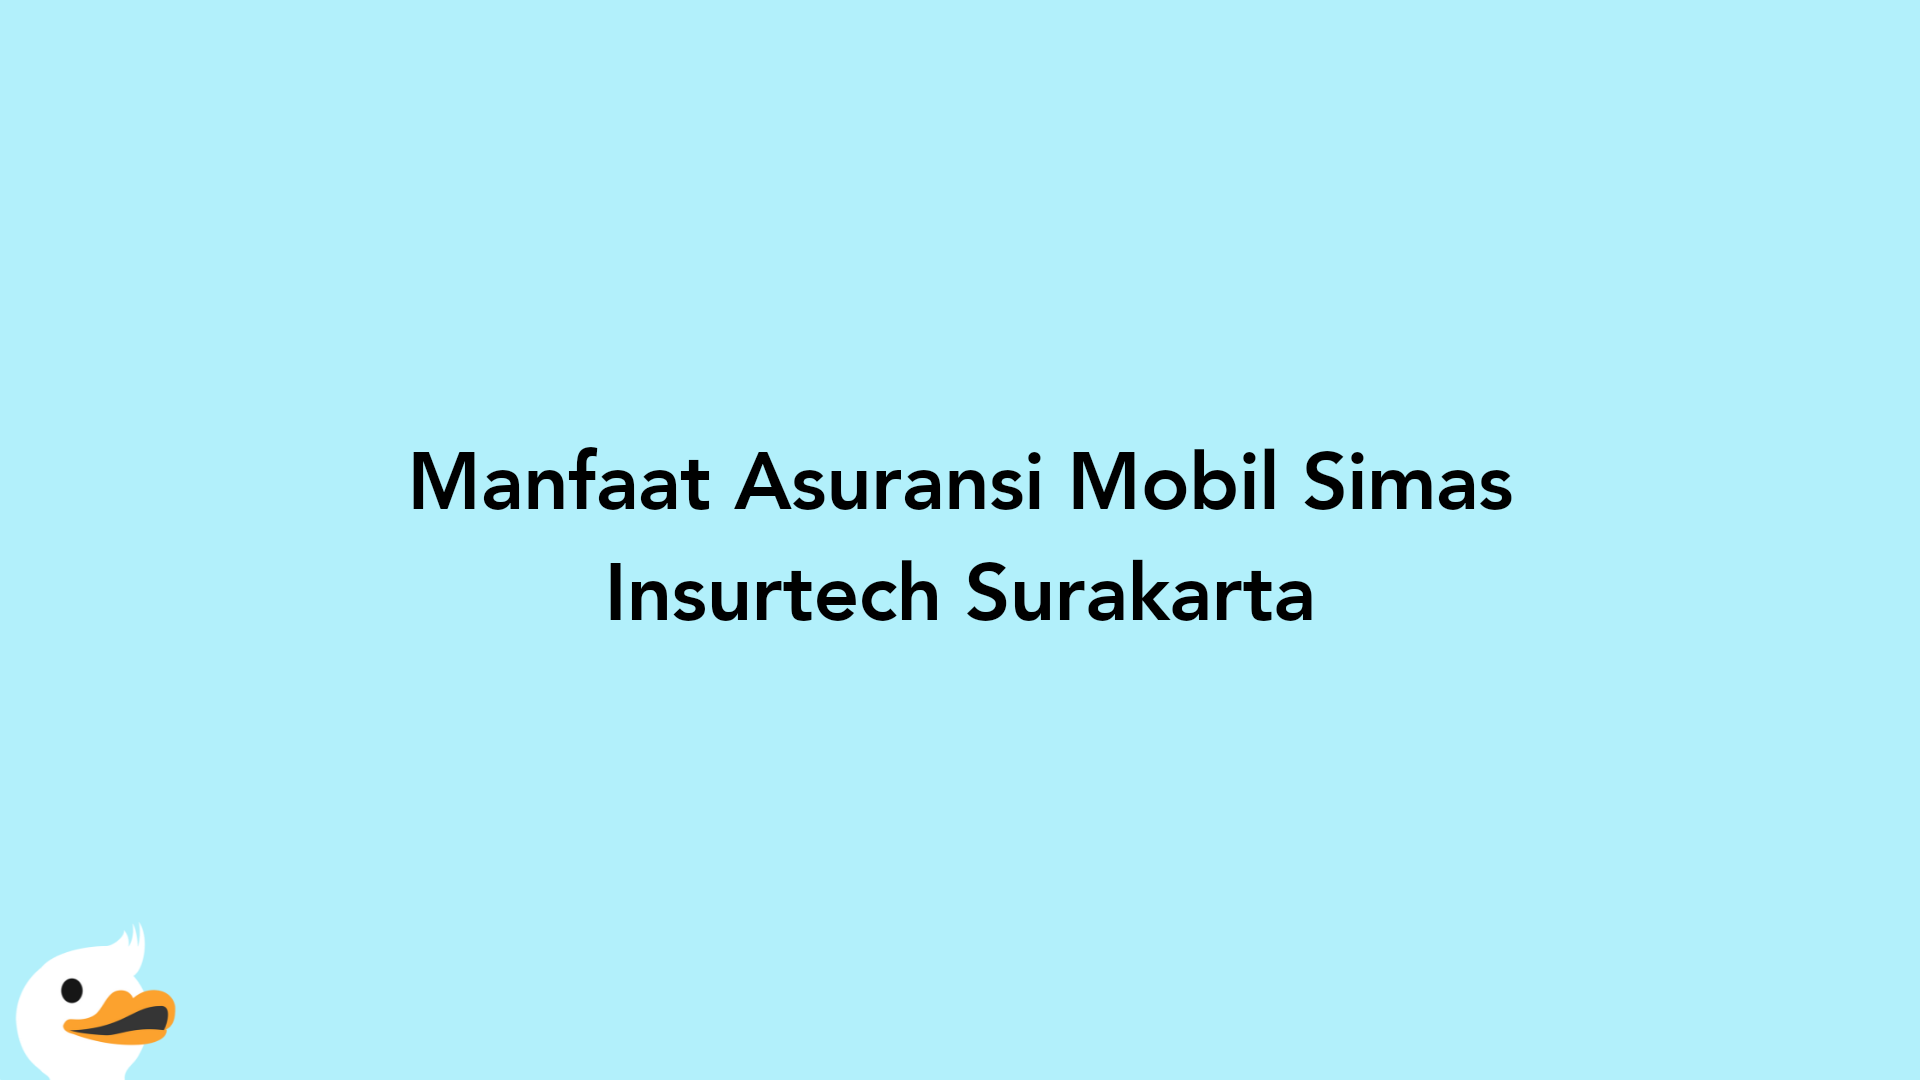 Manfaat Asuransi Mobil Simas Insurtech Surakarta